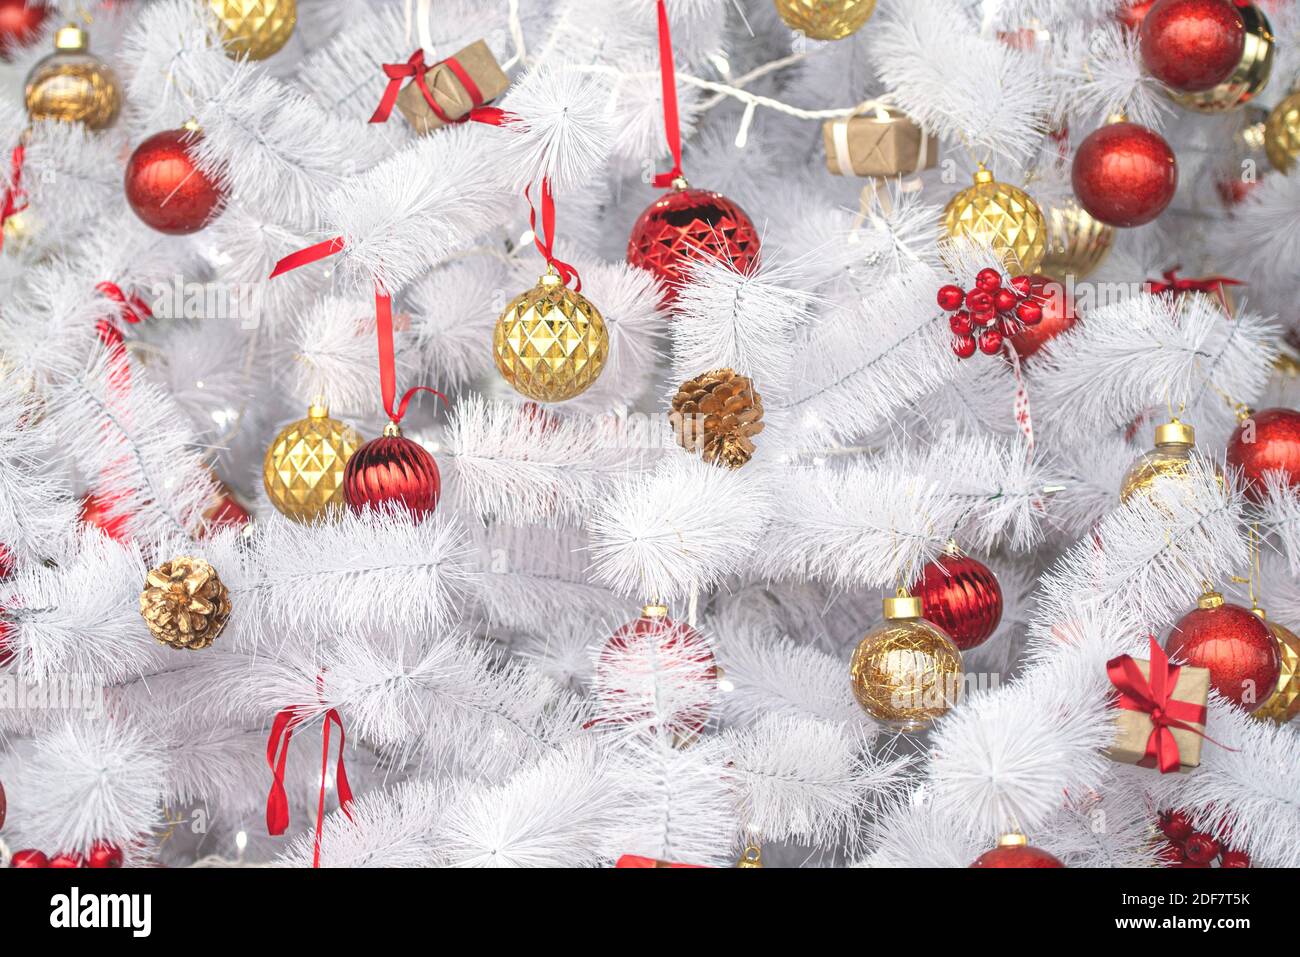 Weißer oder silberner Weihnachtsbaum mit roten, goldenen Spielzeugen, Neujahrskomposition Stockfoto